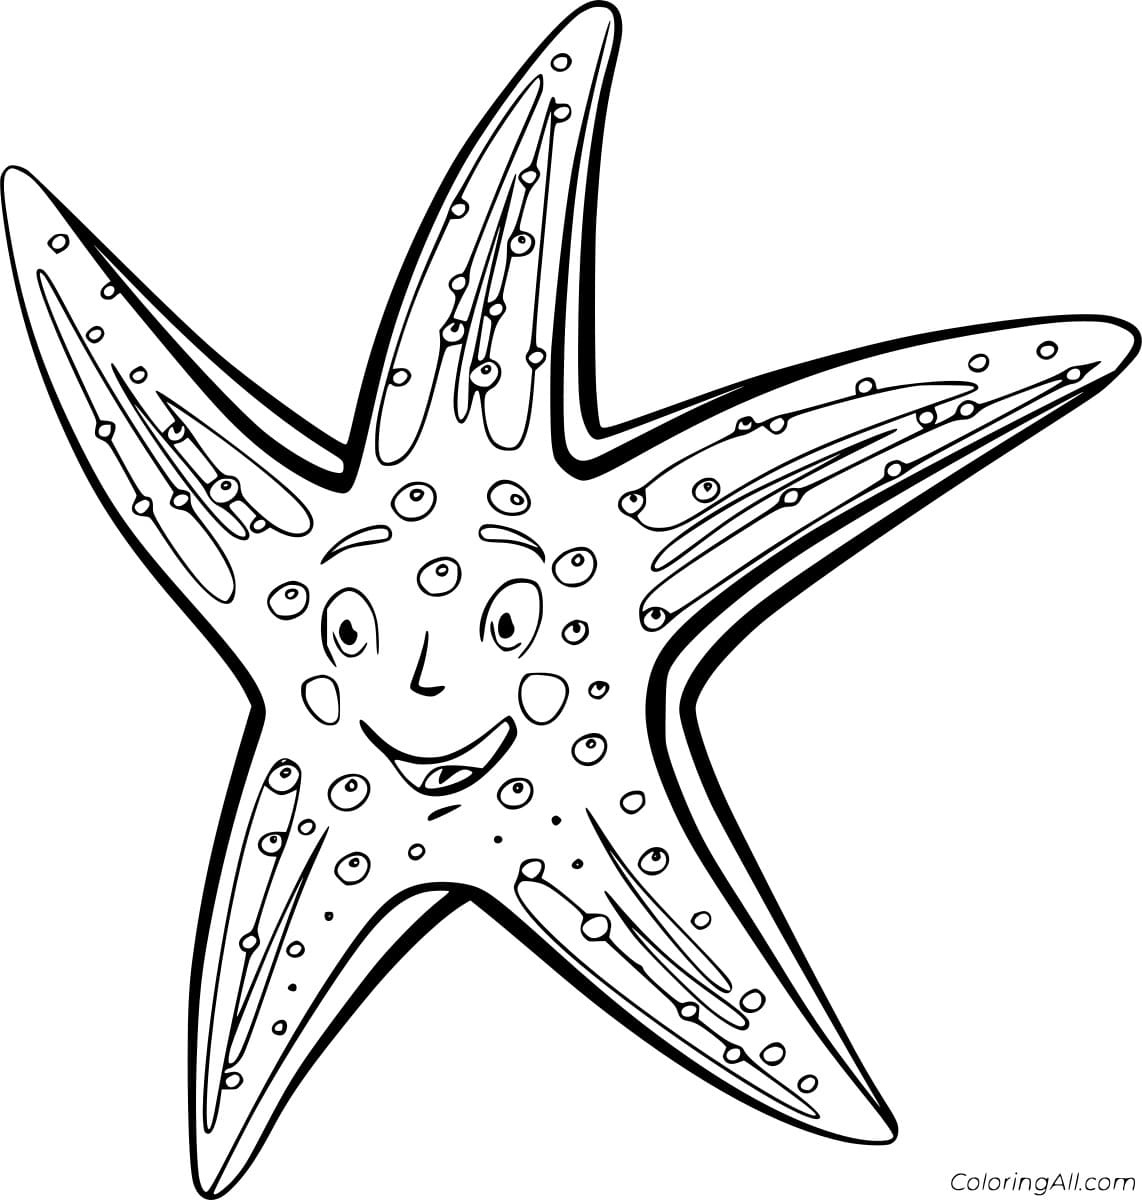 Cartoon Sea Star Image Coloring Page